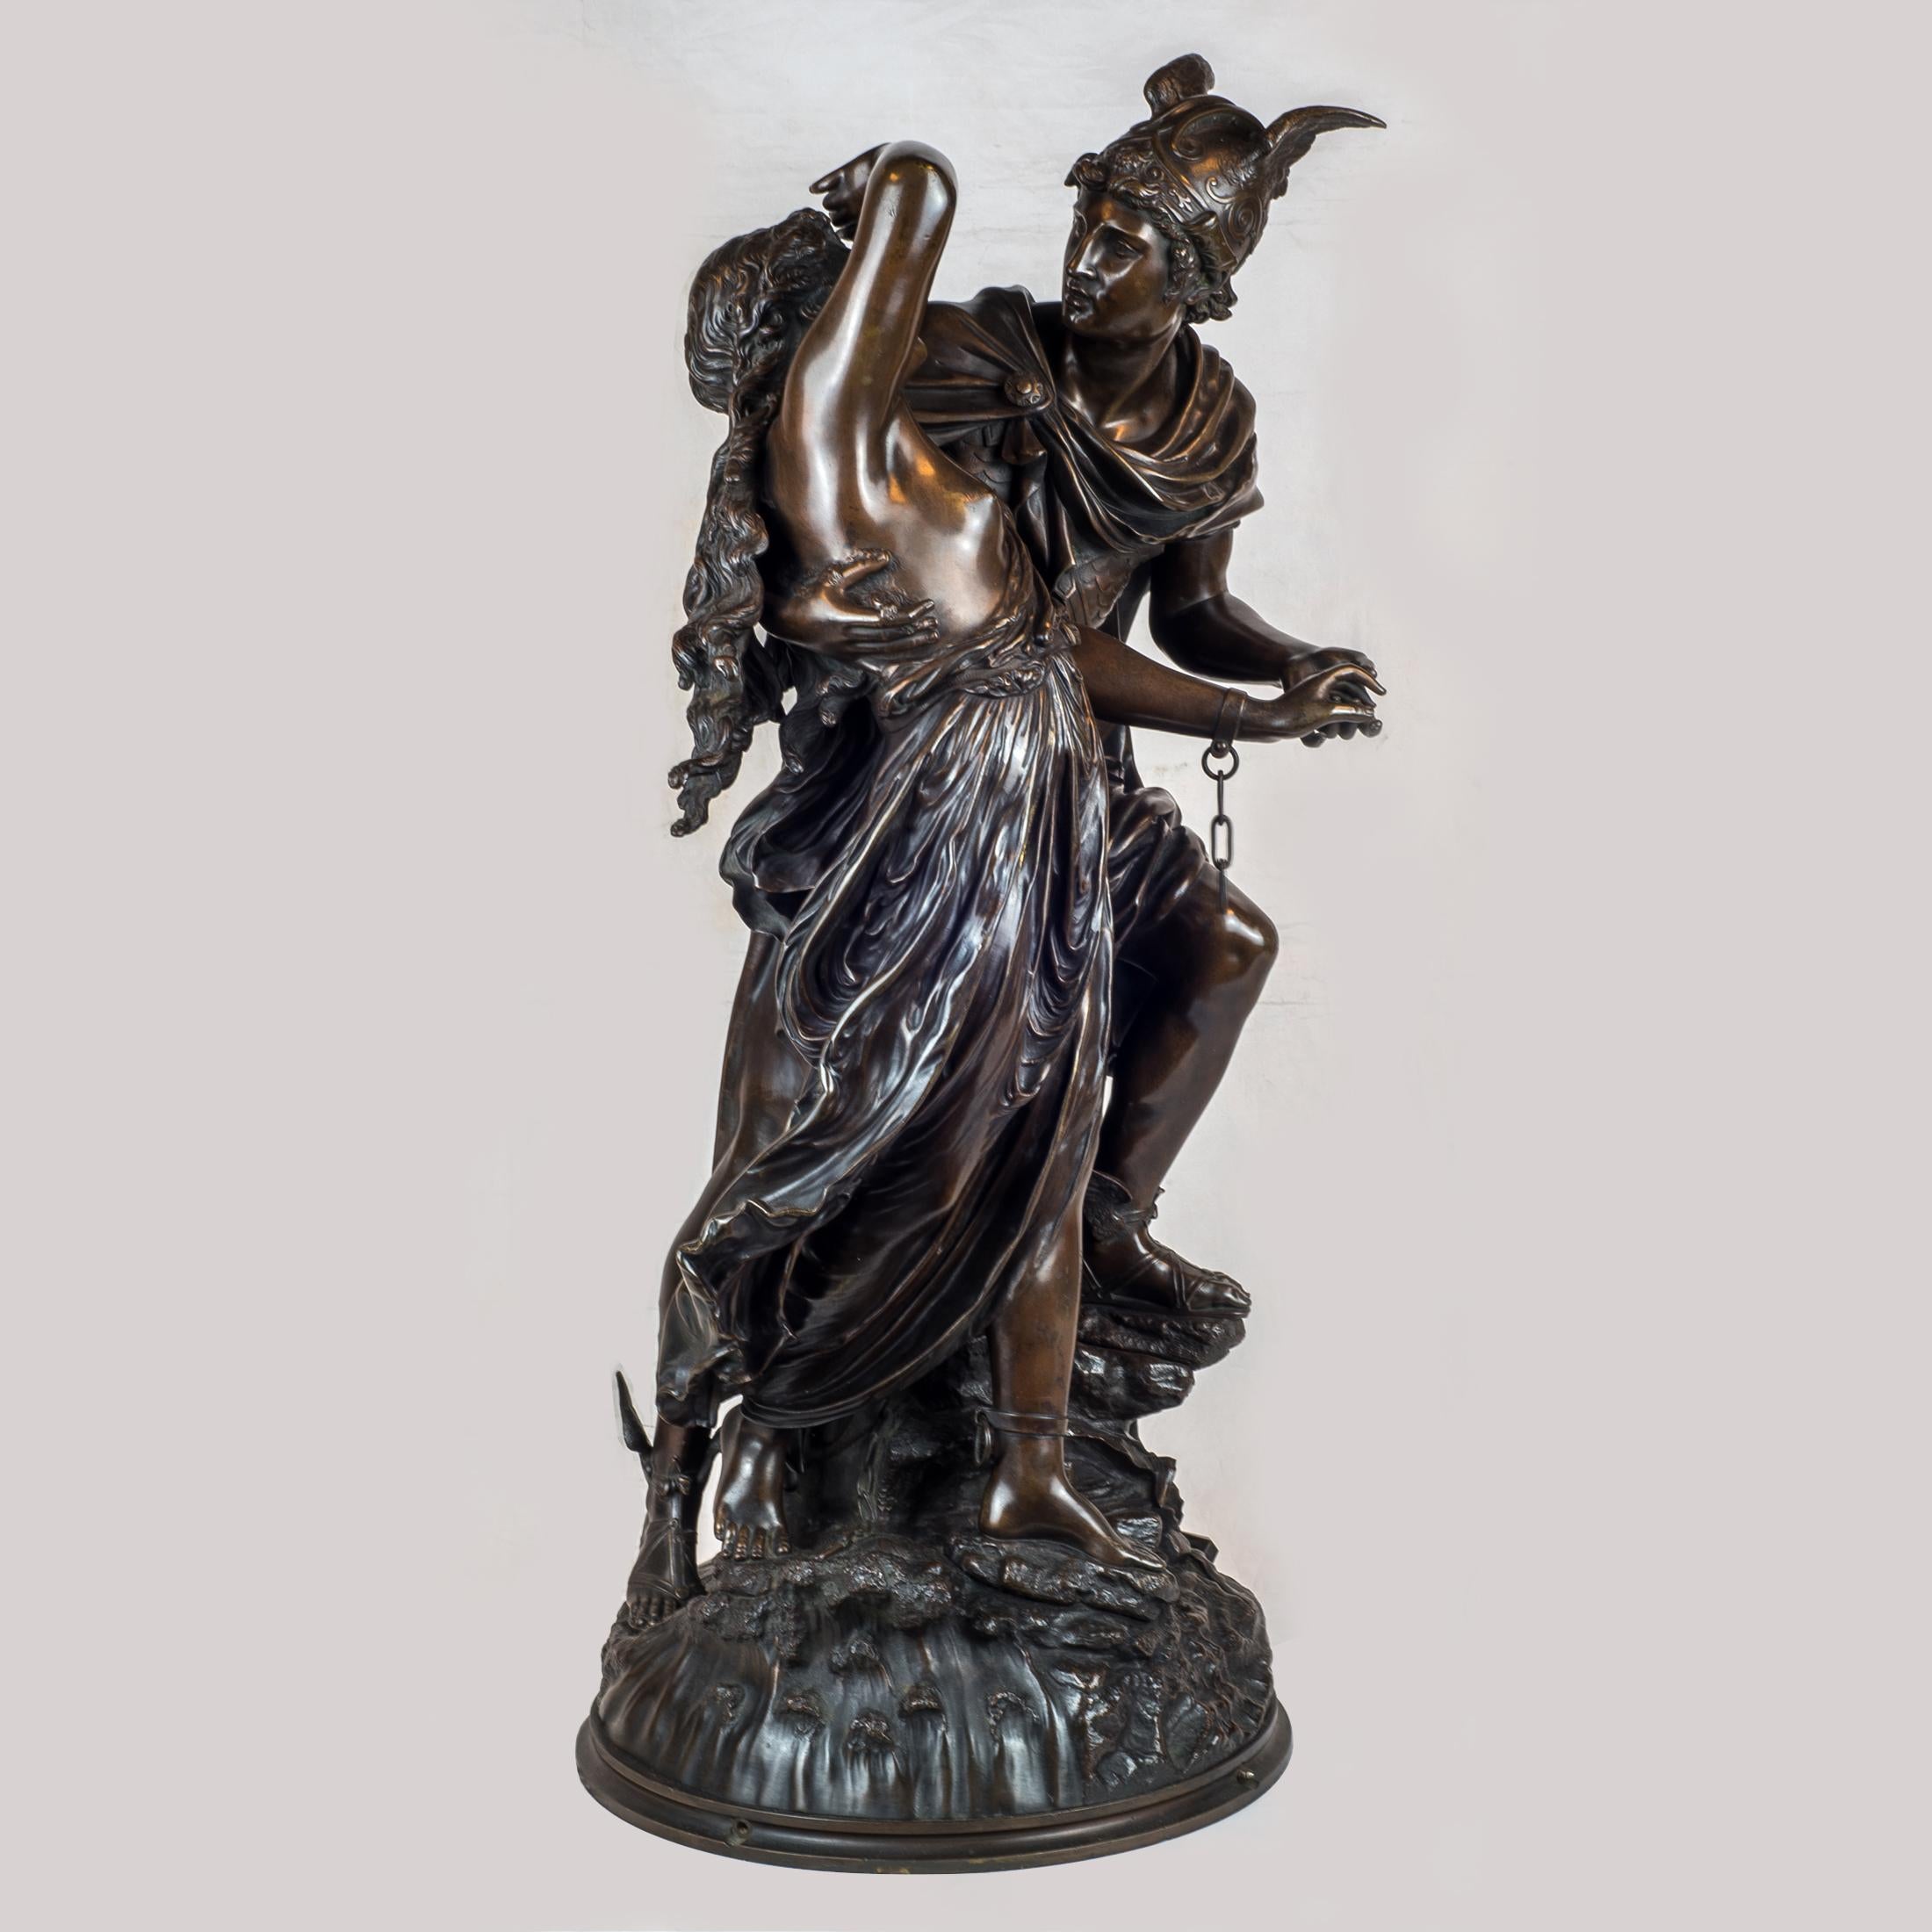 Jean-Léon Grégoire stellt seit 1867 auf dem Salon aus. Er war berühmt für die hohe Qualität seiner gemeißelten Bronzefiguren, wie sie in seinen bekanntesten Werken L'Allegro, Mozart-Kind und Perseus und Andromeda zu sehen sind.
gez. L.